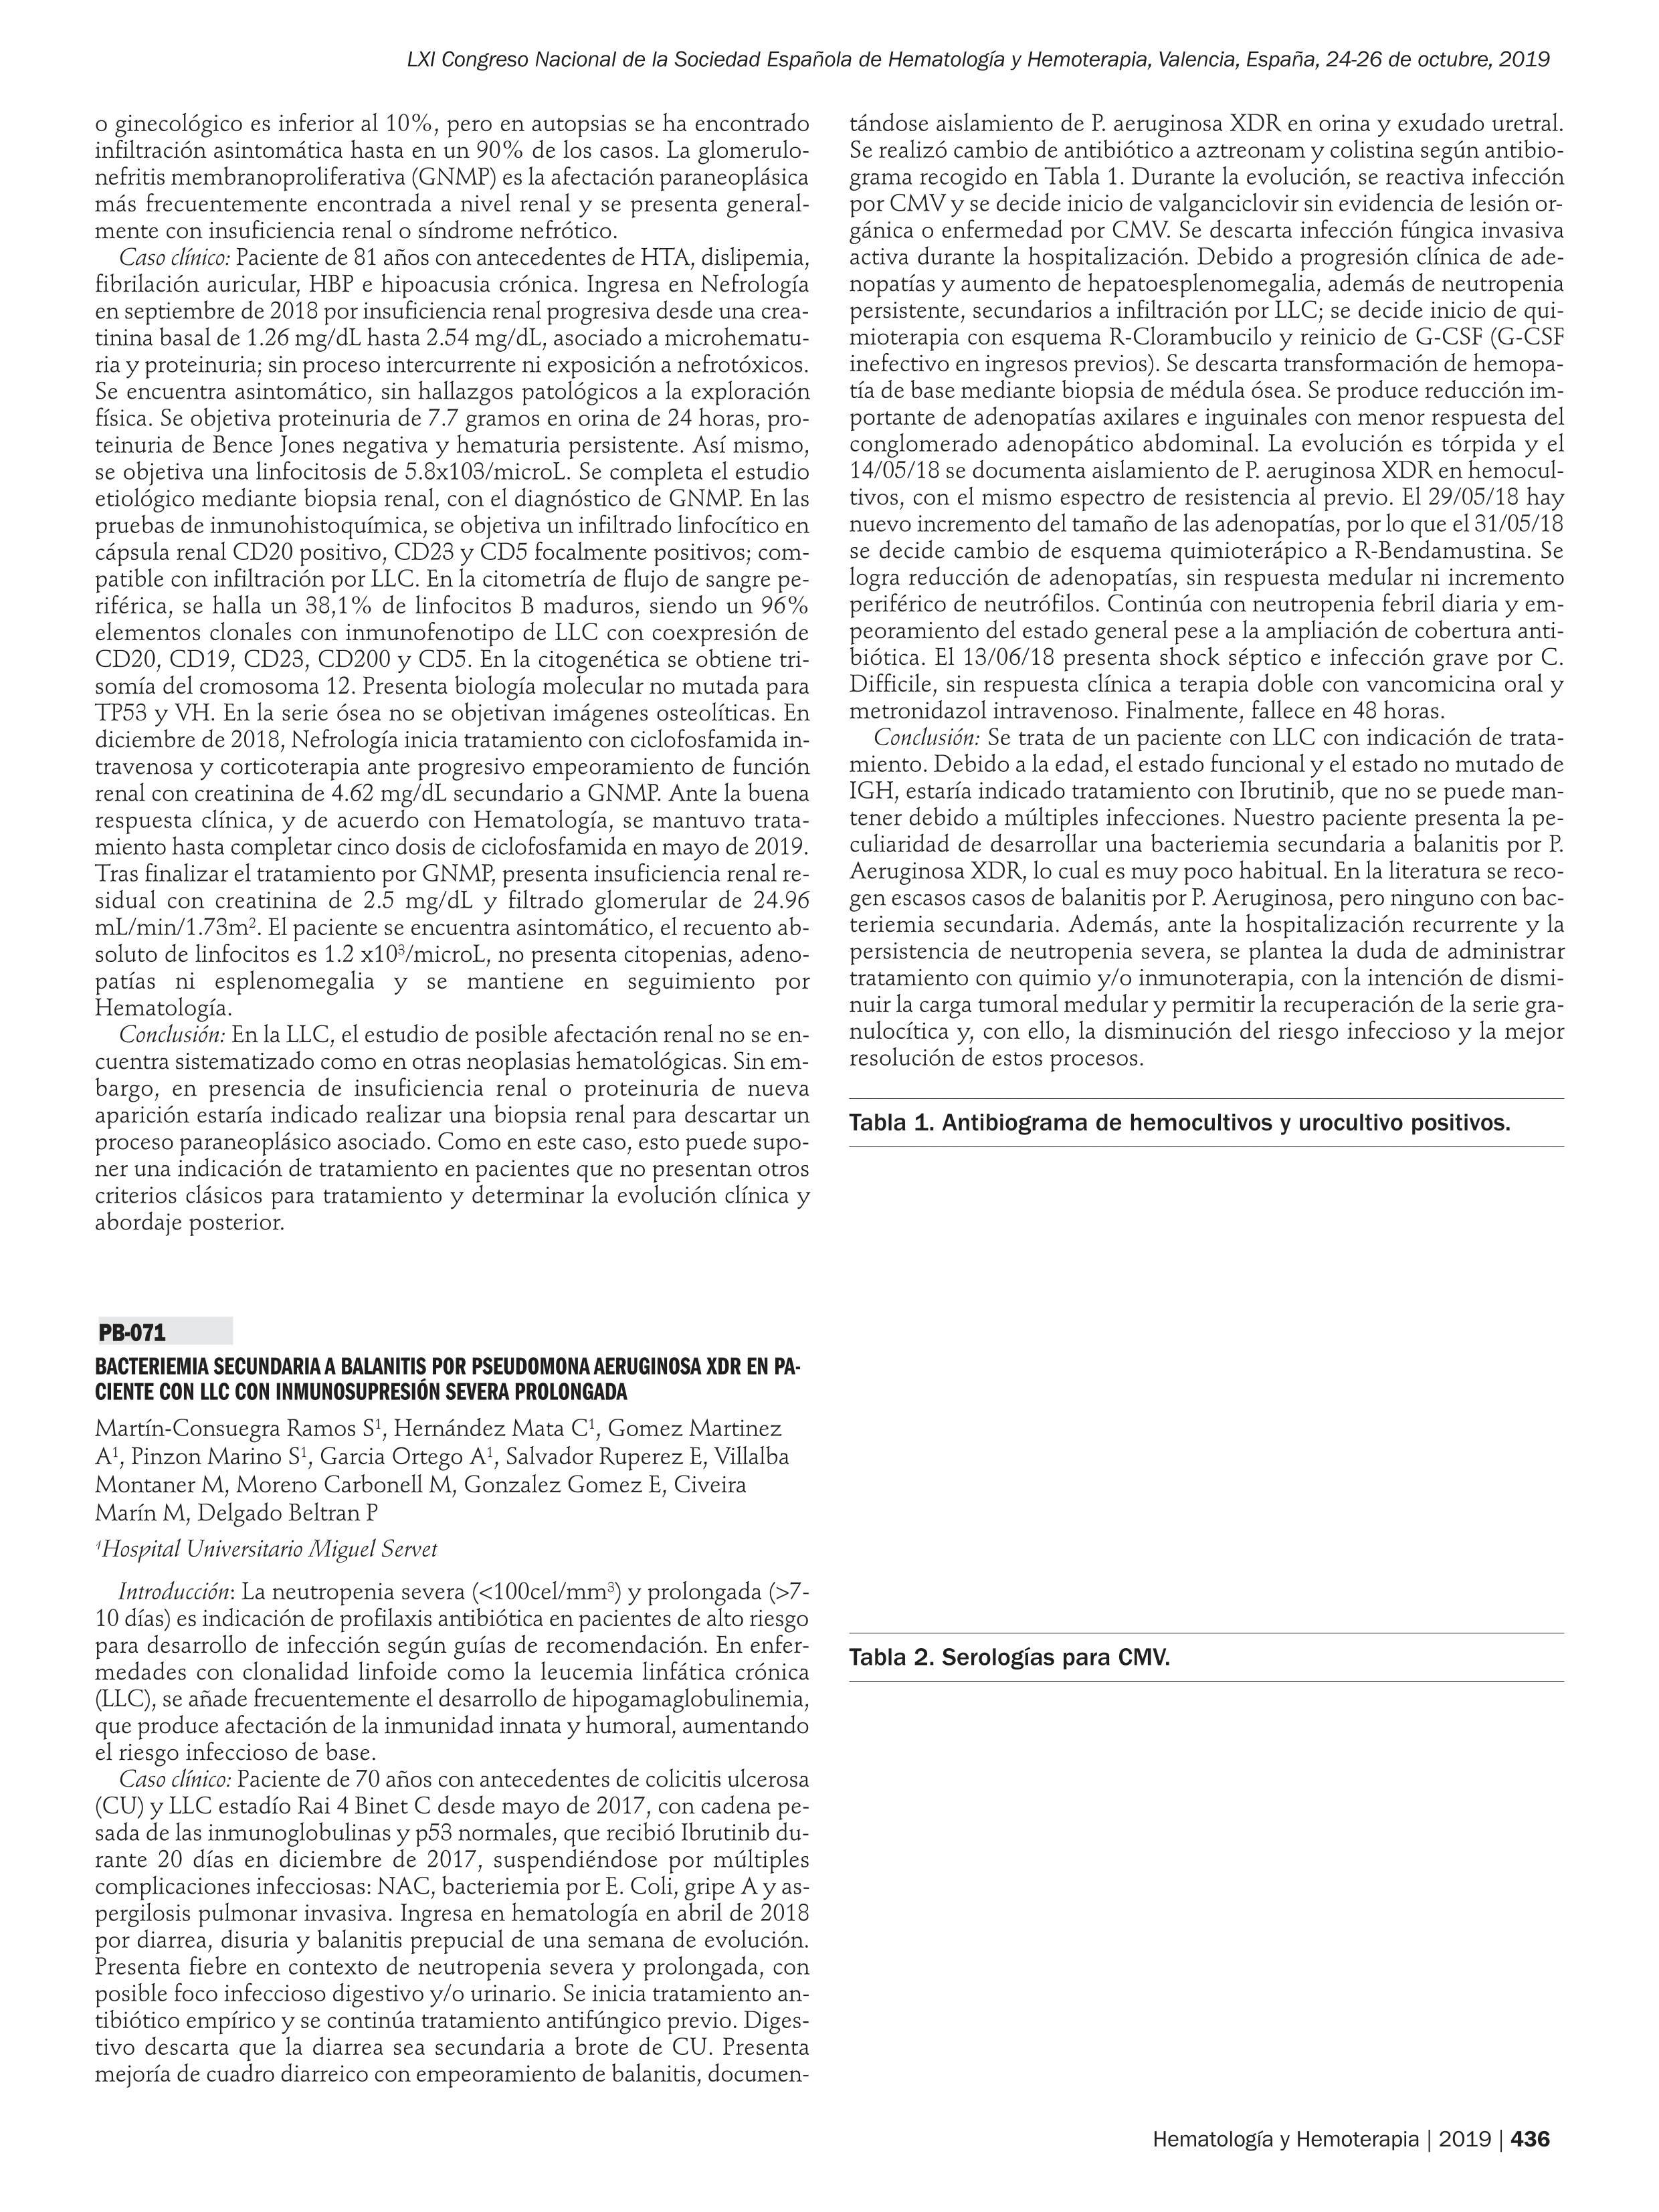 Bacteriemia secundaria a balanitis por pseudomona aeruginosa XDR en paciente con LLC con inmunosupresión severa prolongada